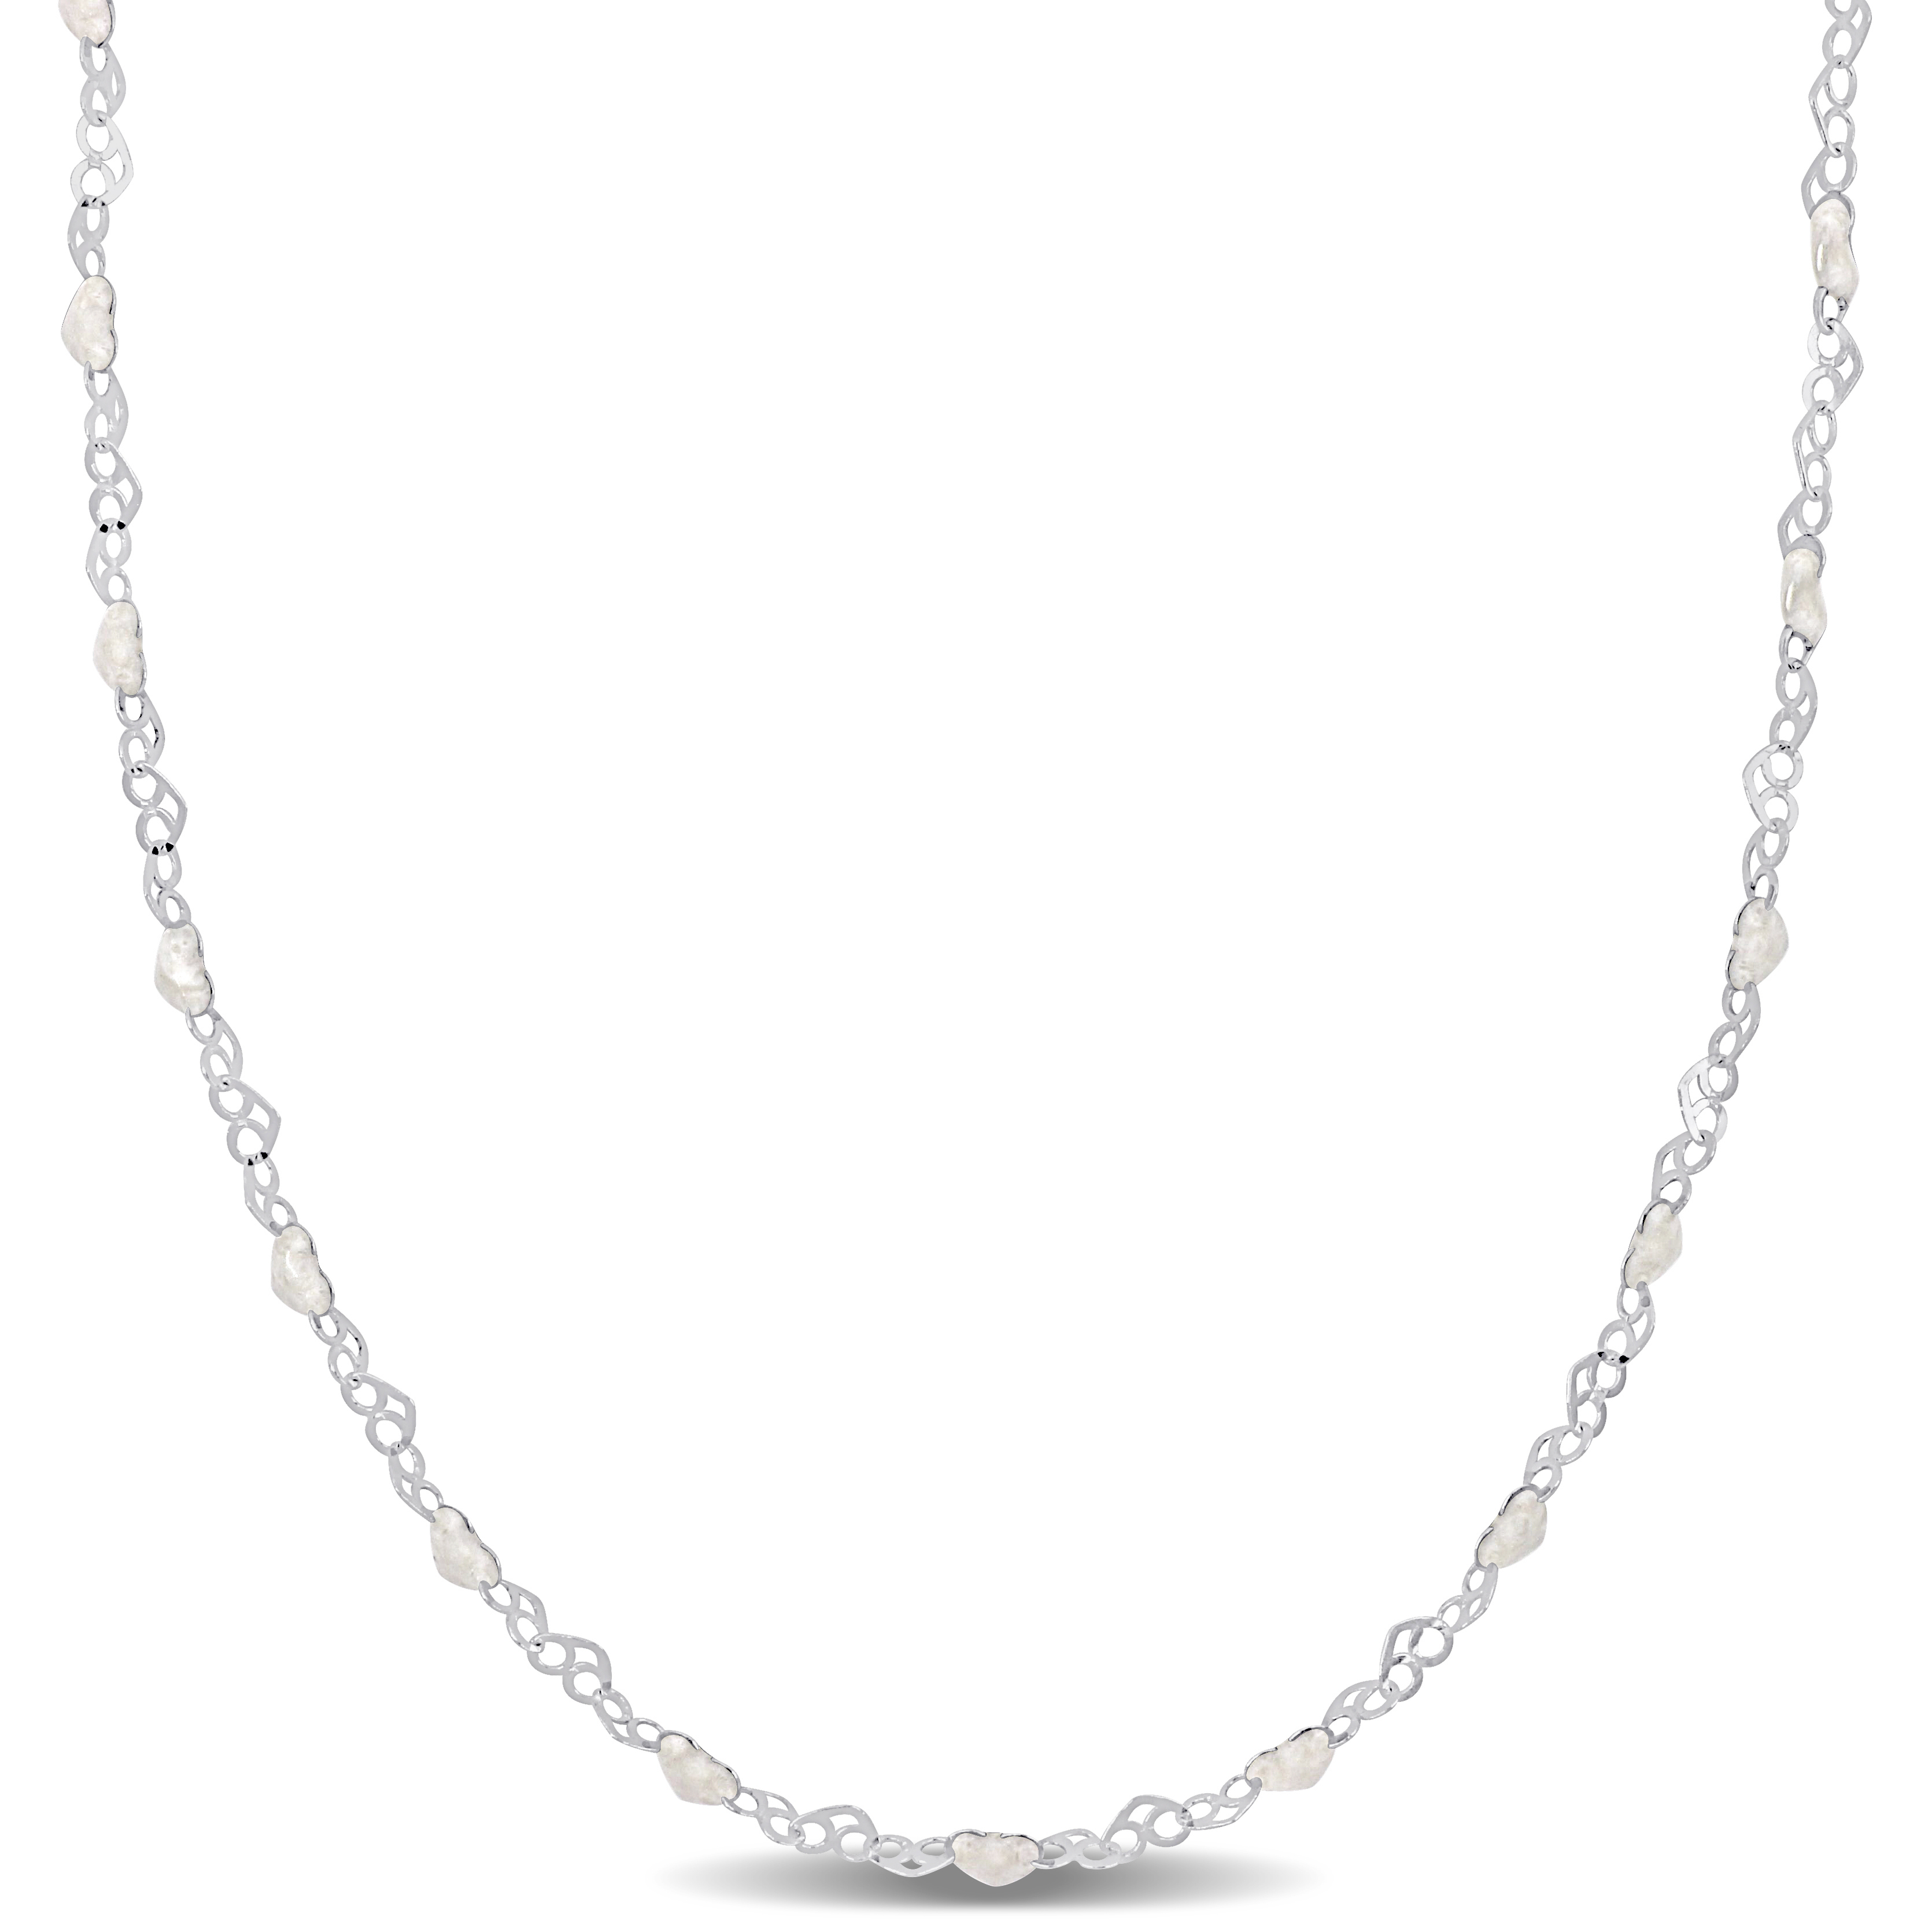 White Enamel Heart Link Necklace in Sterling Silver - 16 in.